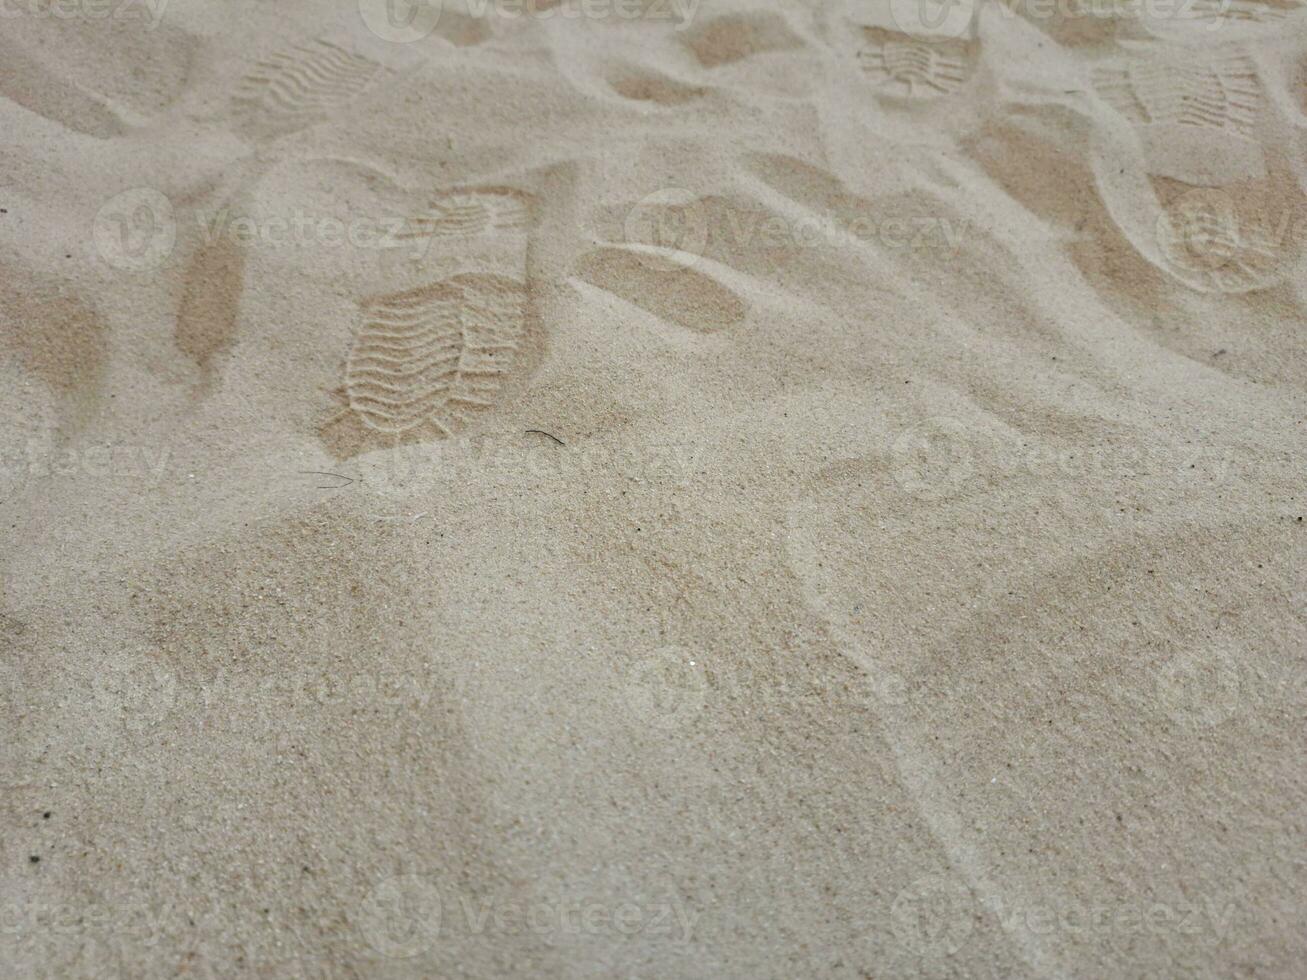 zapato huellas dactilares en el arena son poco claro. foto